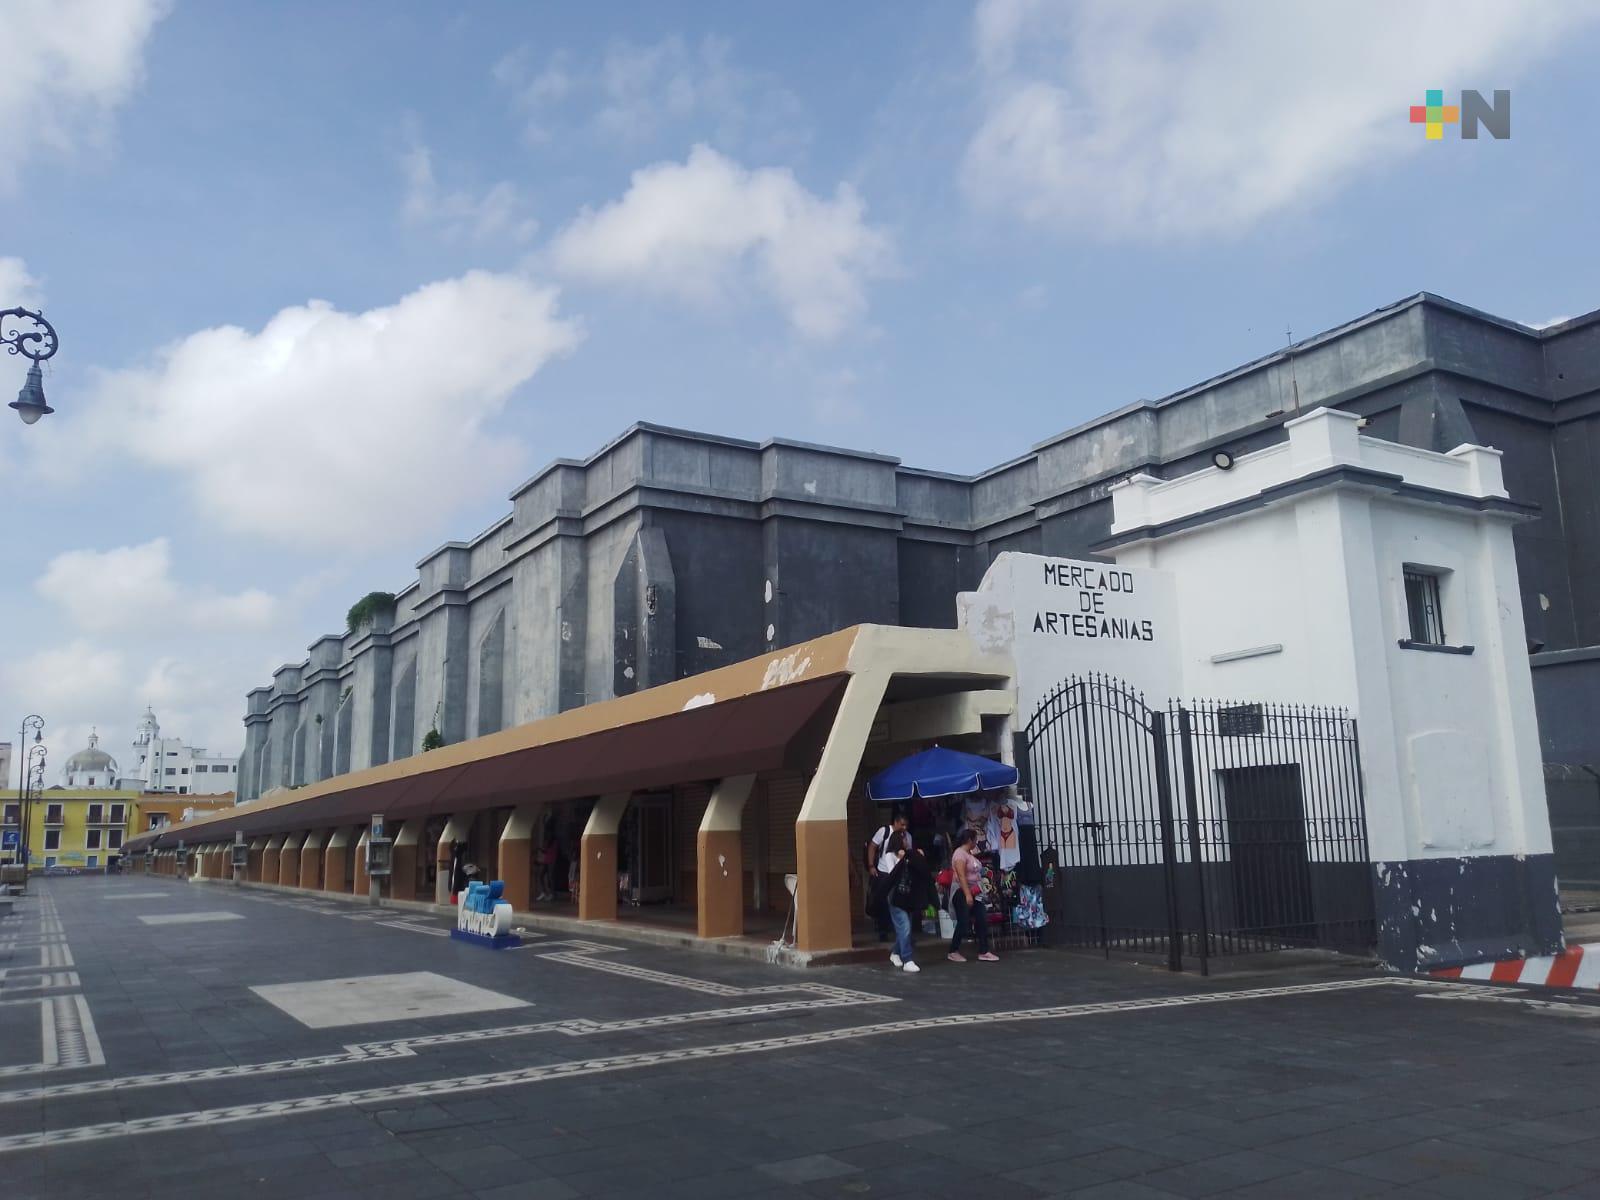 Alentará turismo y economía construcción de plaza en malecón de Veracruz